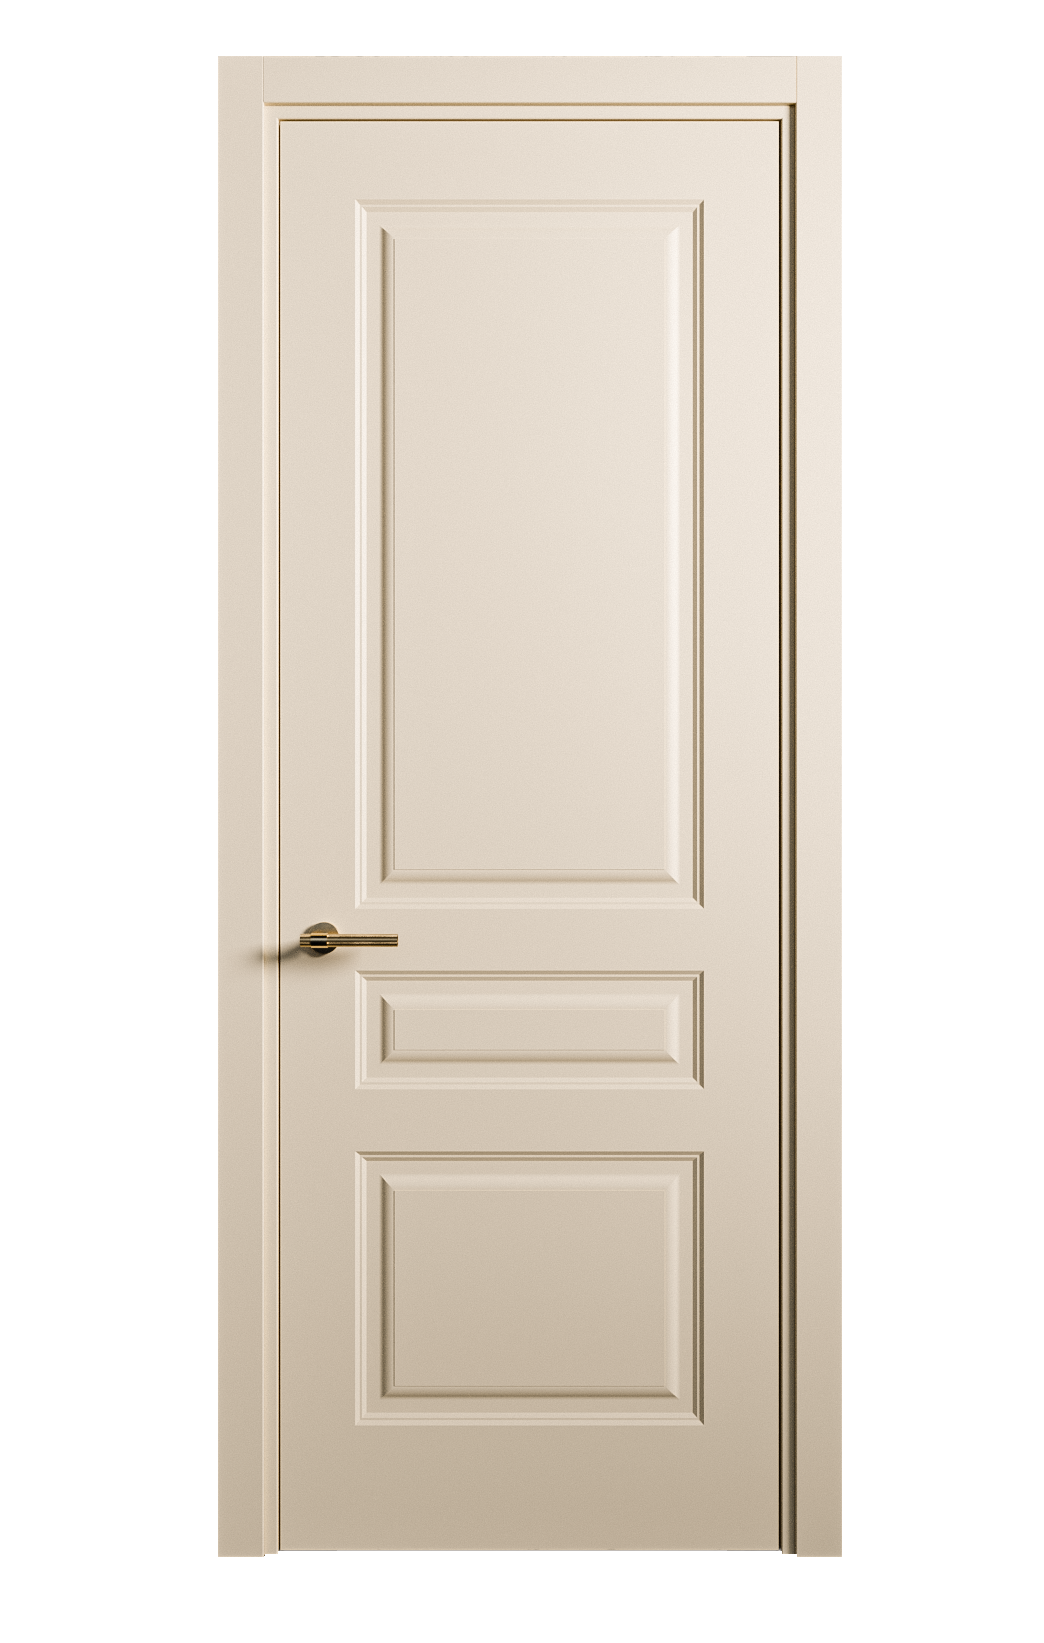 Межкомнатная дверь Вита-2 глухая эмаль ral 1015 26387